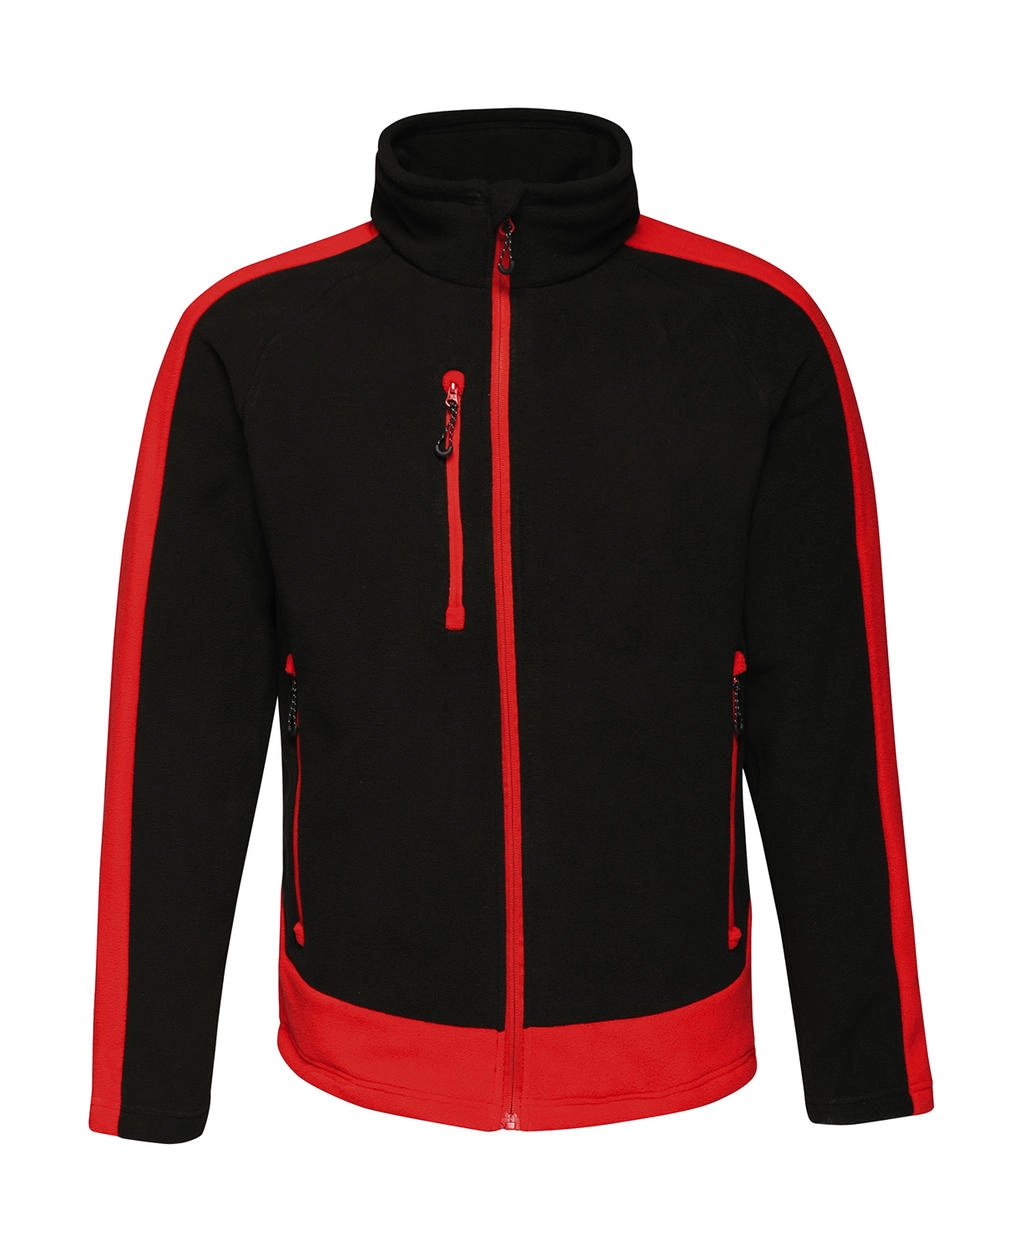 Contrast 300G Fleece zum Besticken und Bedrucken in der Farbe Black/Classic Red mit Ihren Logo, Schriftzug oder Motiv.